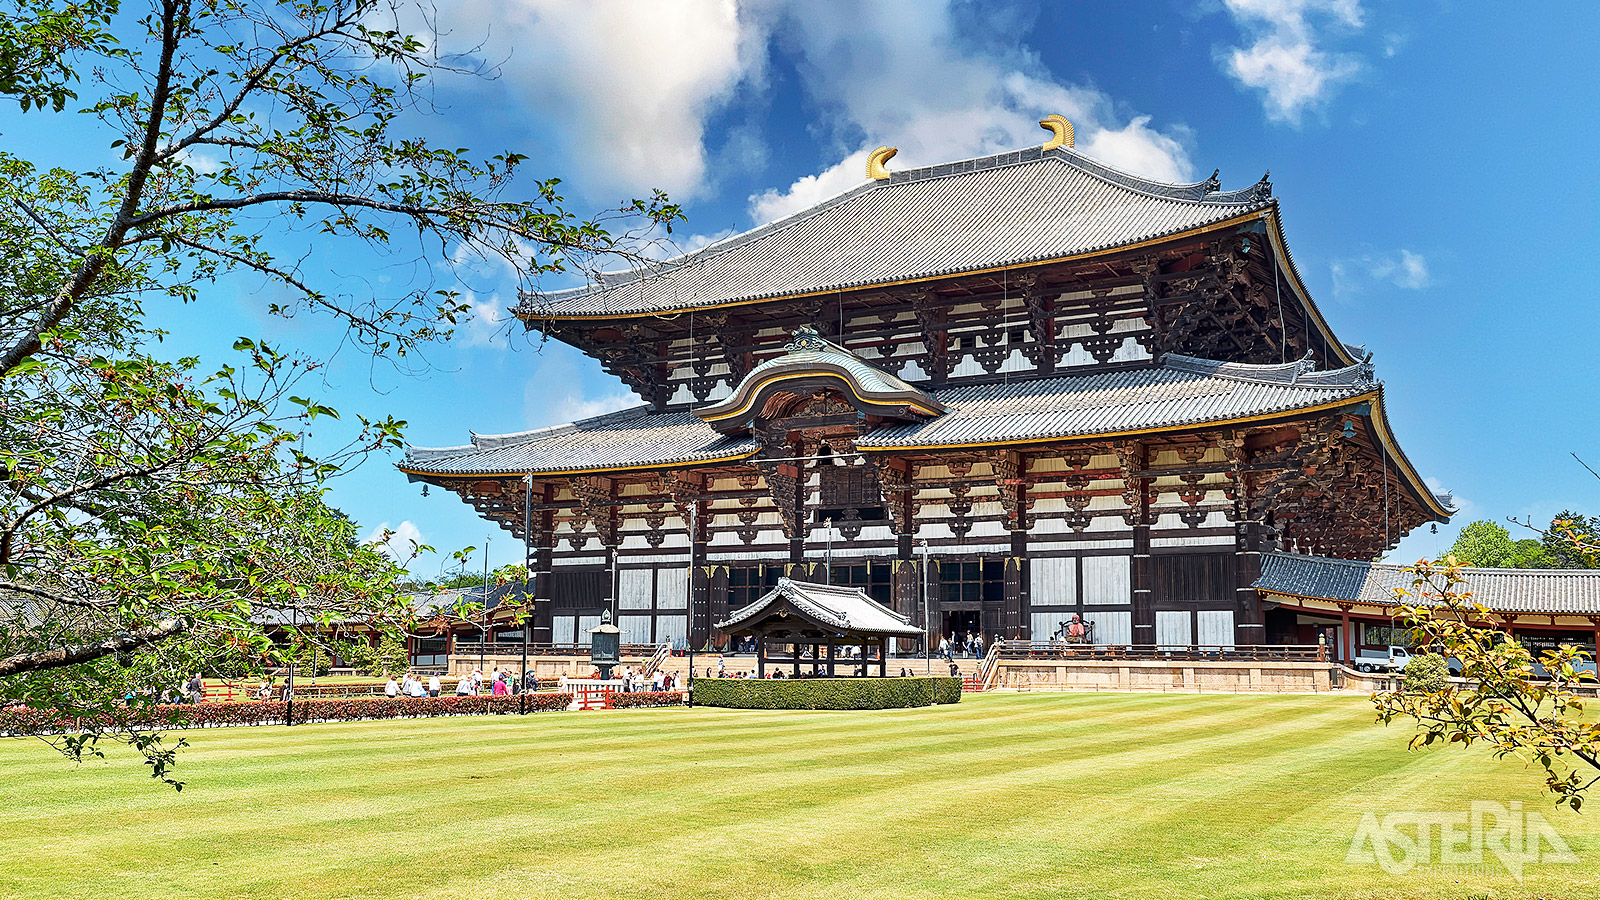 De houten Toda-ji-tempel in Nara, Japan, is één van de meest beroemde en historische boeddhistische tempels van Japan